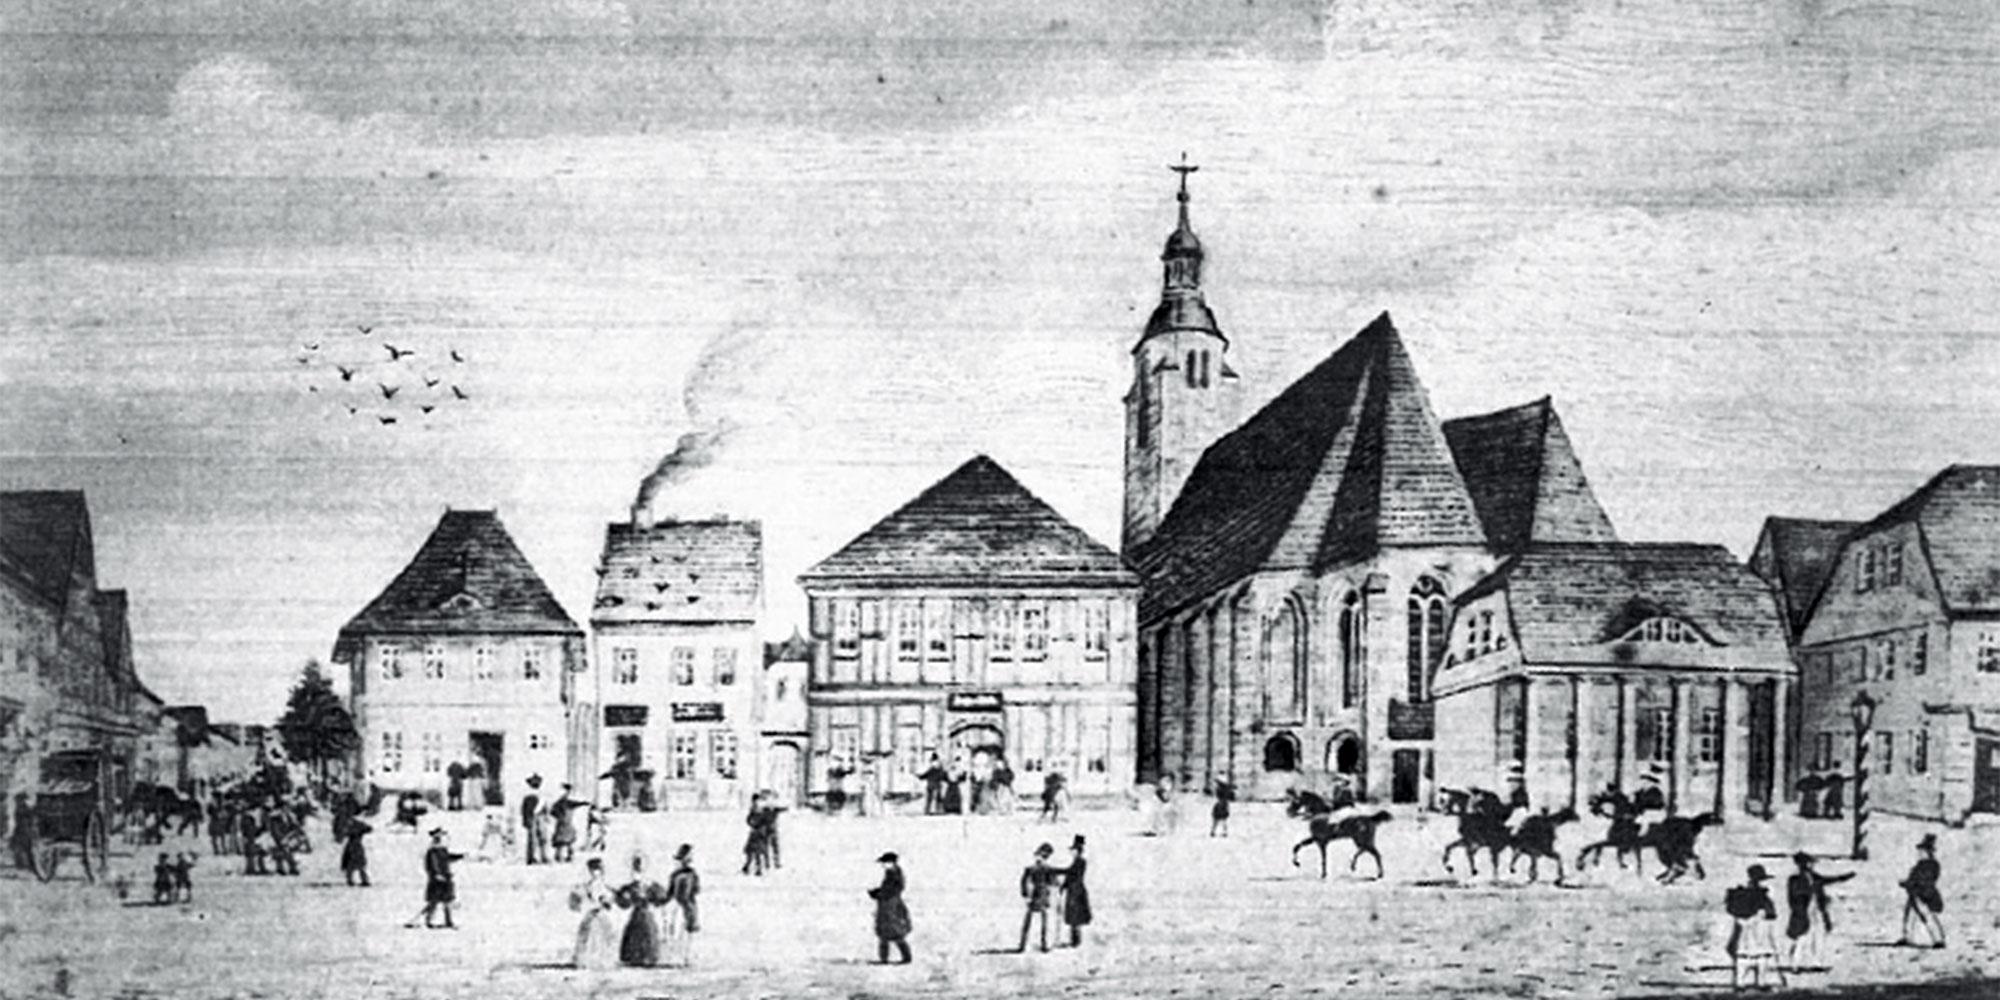 Hôtel de ville et environs en 1837 ; source : Conseil municipal de Beelitz (éd.): "Beelitz in der Mark Stadtrundgang" p. 11